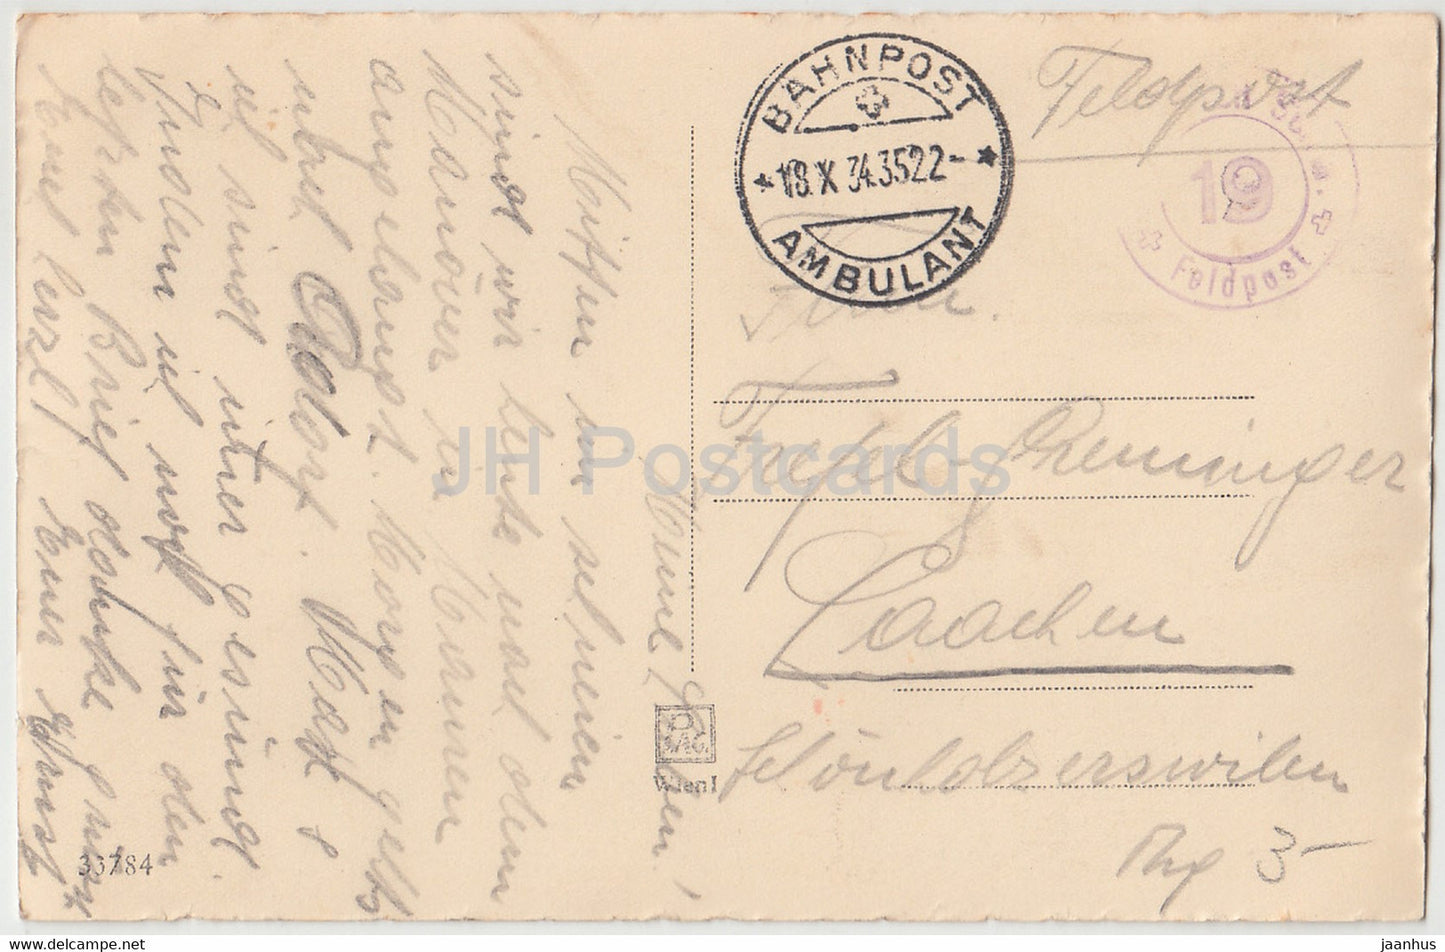 Scheidende Sonne - Feldpost - Bahnpost Ambulant - 33784 - carte postale ancienne - 1934 - Autriche - utilisé